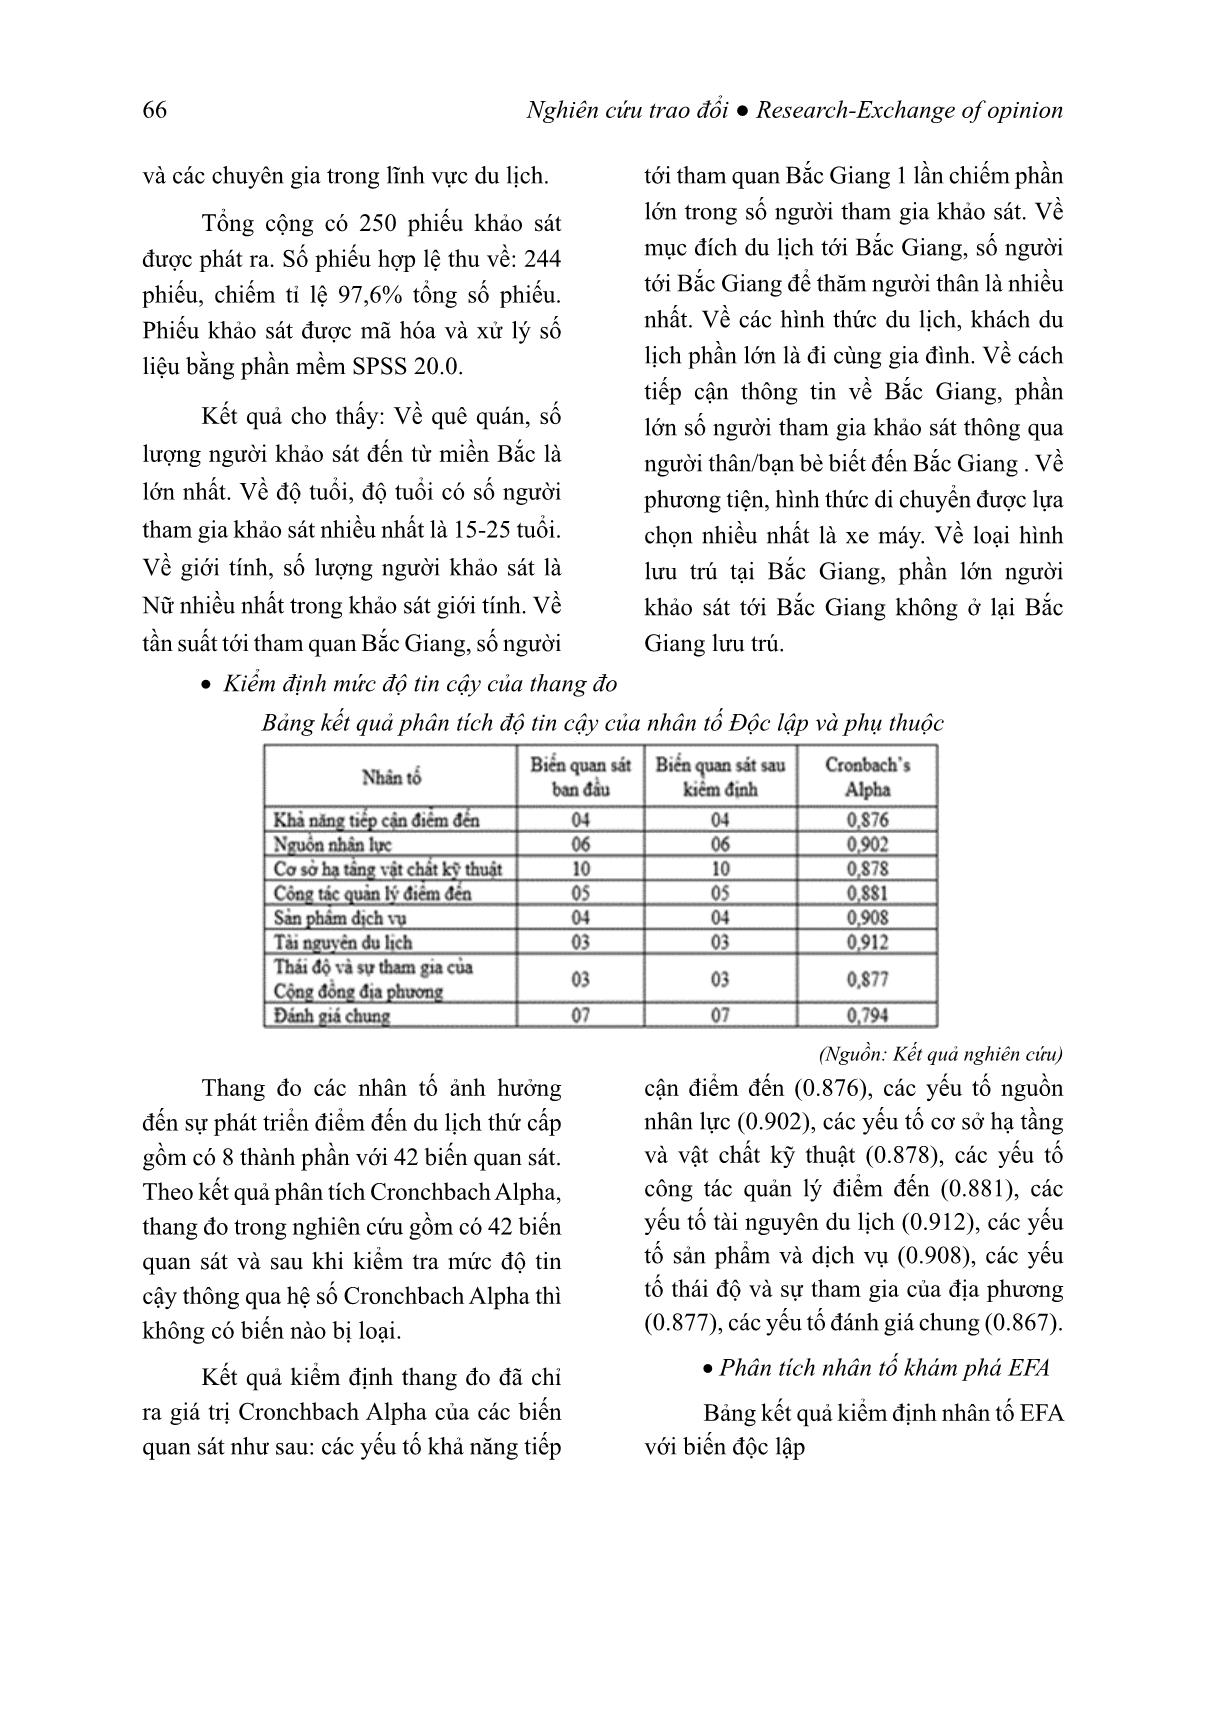 Những yếu tố ảnh hưởng tới sự phát triển điểm đến du lịch thứ cấp (Nghiên cứu điển hình tại tỉnh Bắc Giang) trang 7